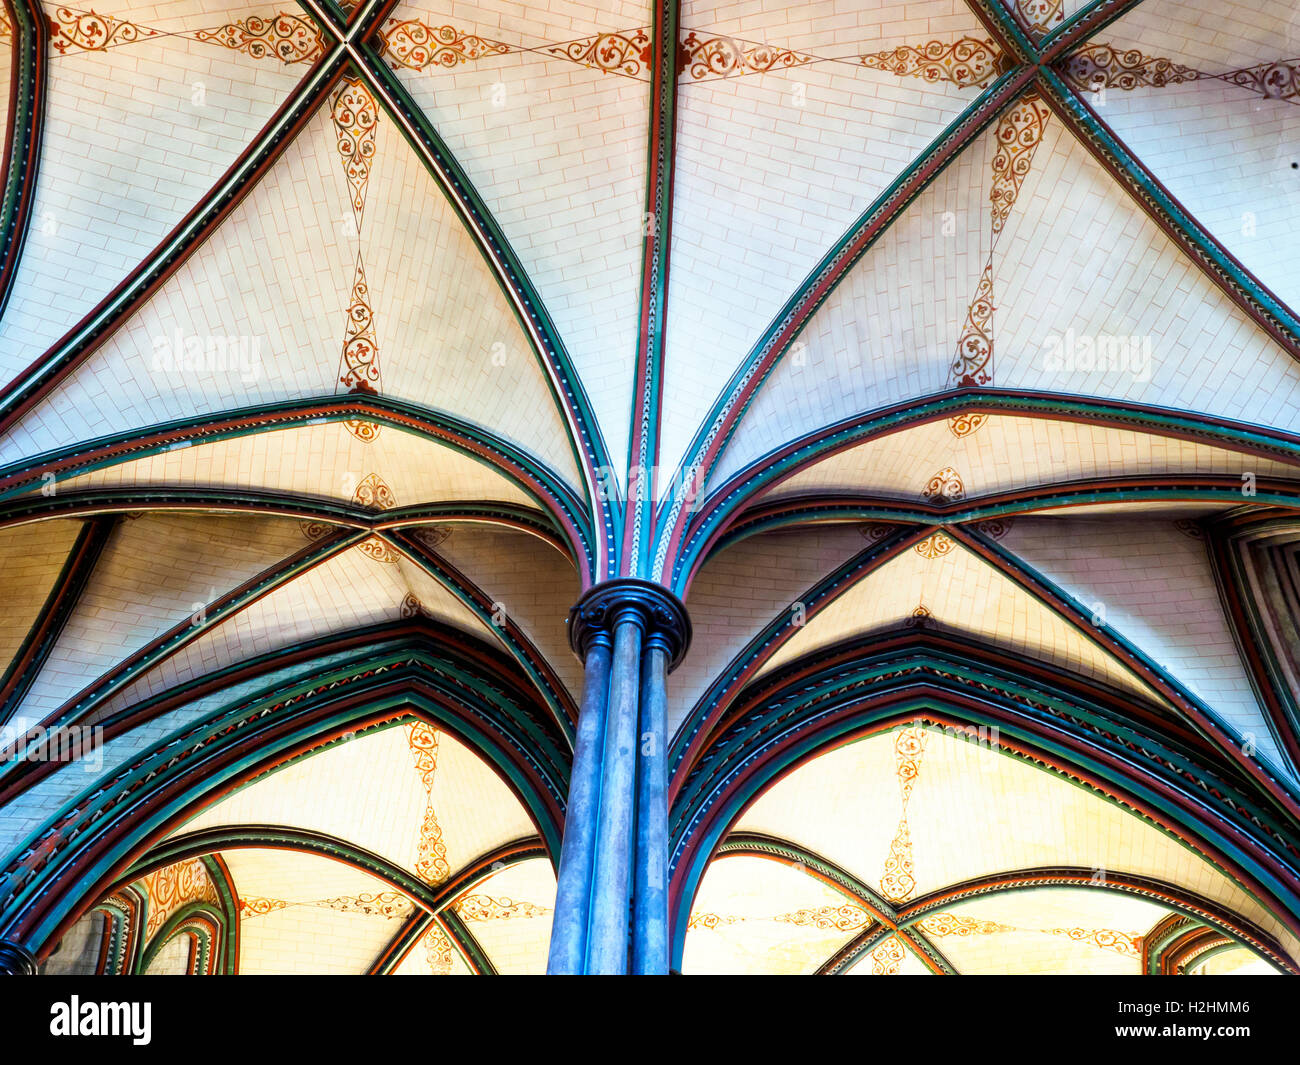 La cathédrale de Salisbury ou Cathédrale de l'église de la Bienheureuse Vierge Marie - Wiltshire, Angleterre Banque D'Images